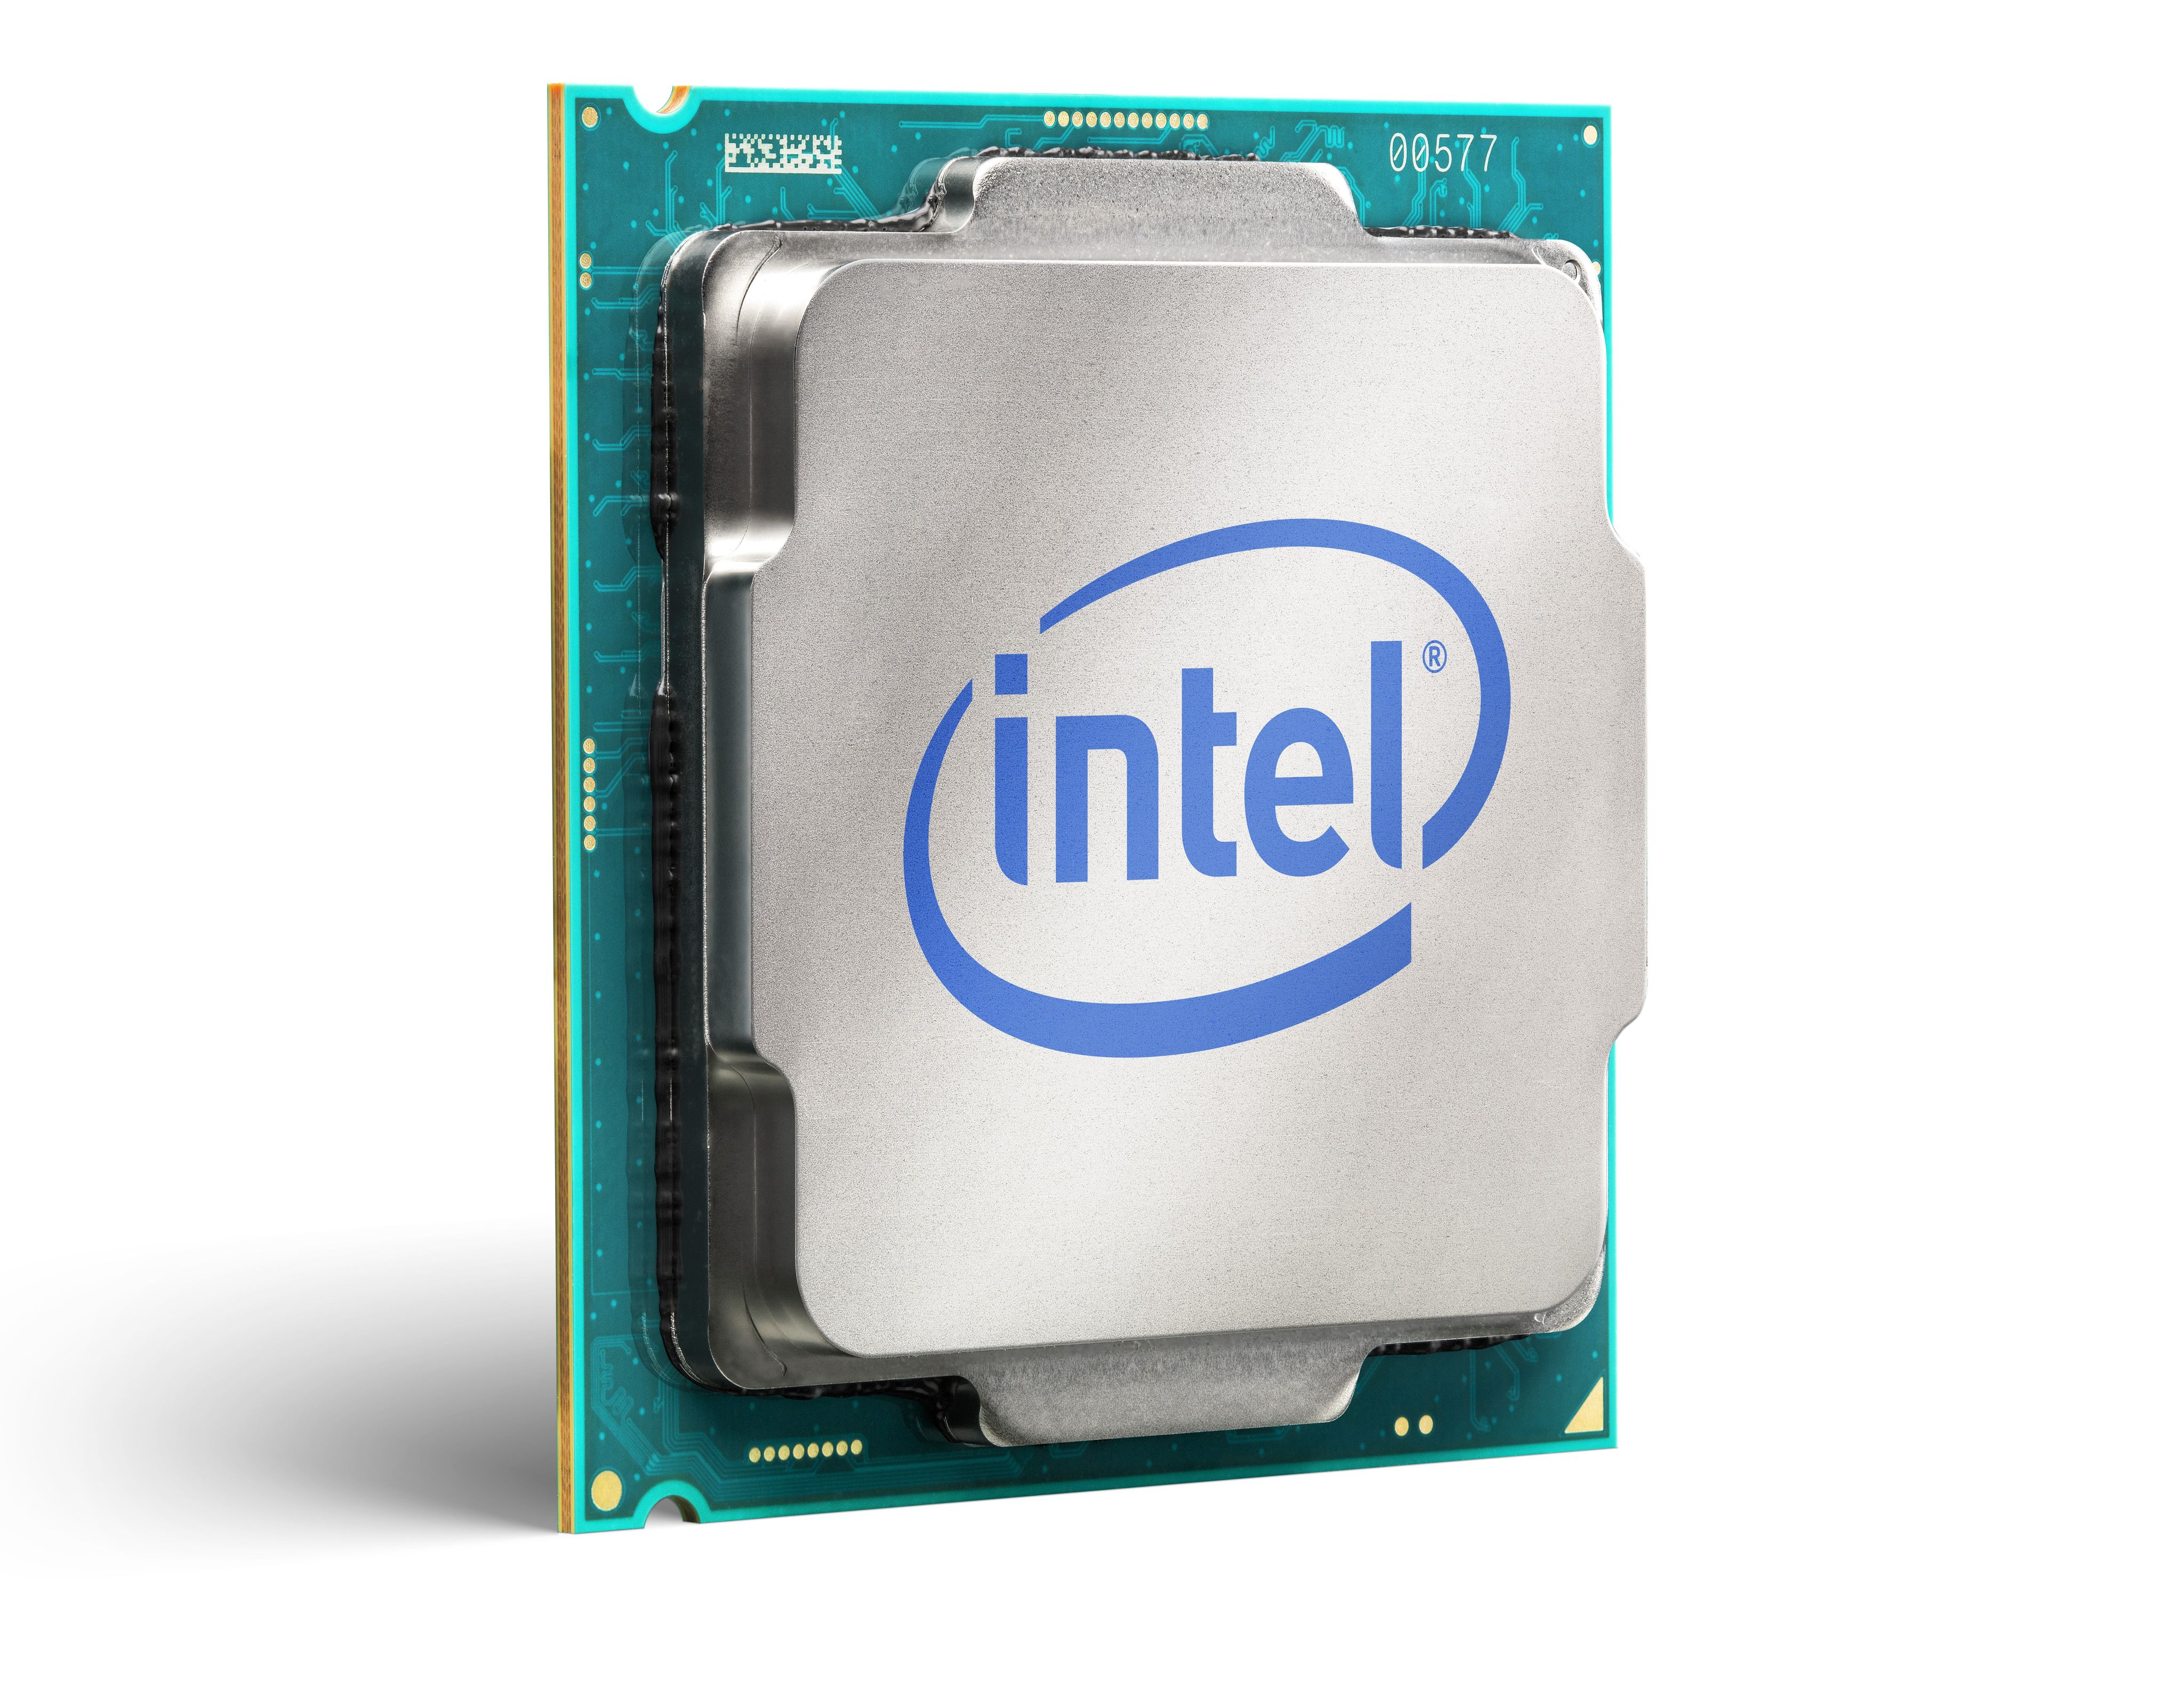 Интел м. Процессор Intel Xeon e5-1680v3 Haswell-Ep. Процессор Intel Xeon e5-2623v3. Процессор CPU Intel Core i7. Intel Pentium Core i7.